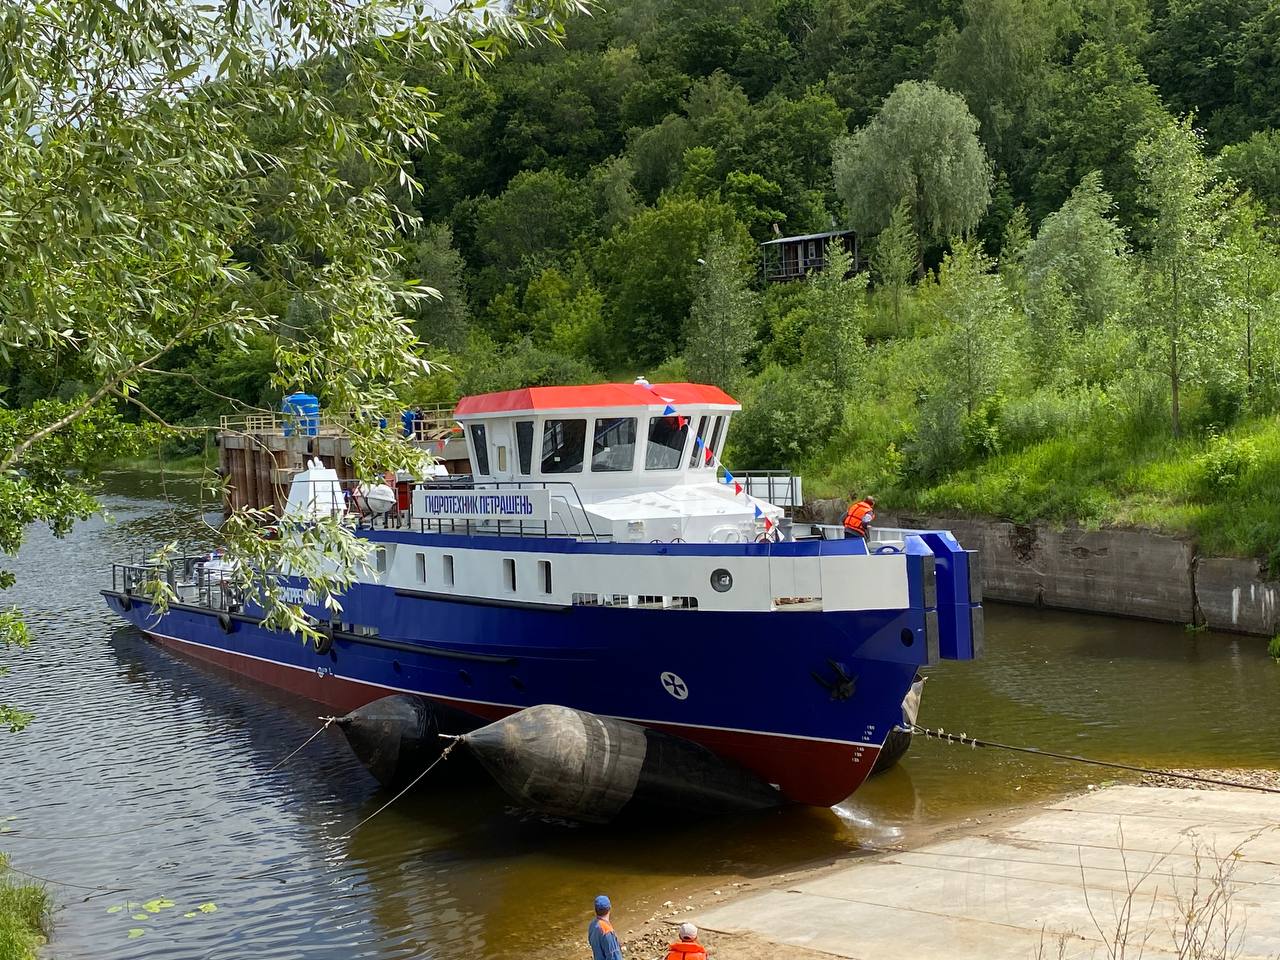 Фото: пресс-служба правительства Нижегородской области. Обстановочное судно, спущенное на воду в Богородске летом 2022 года